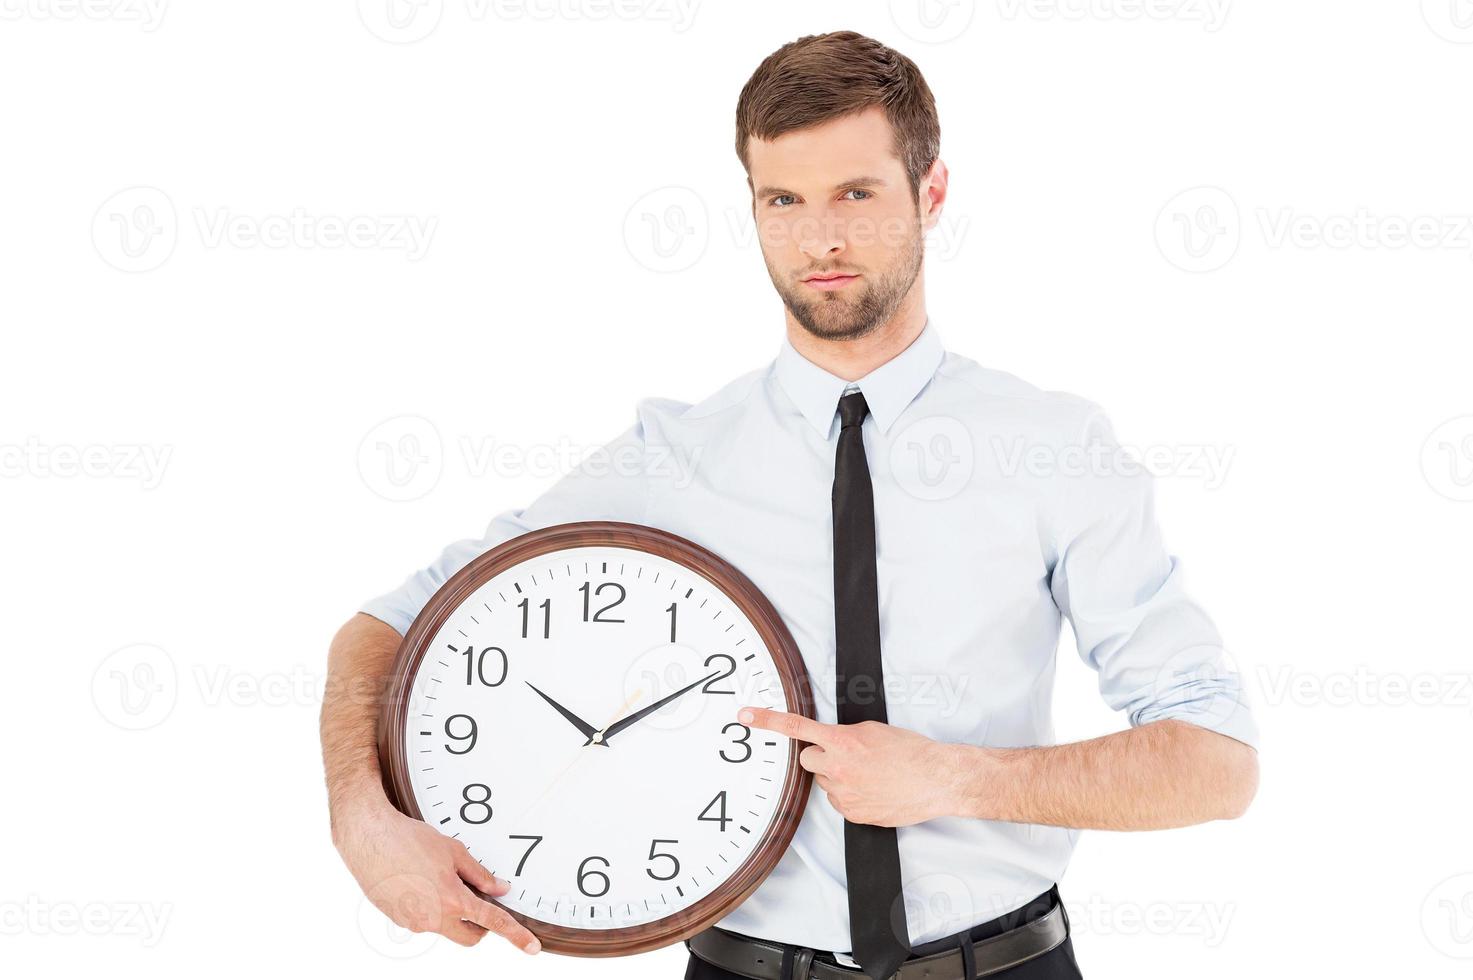 tempo é dinheiro jovem sério em trajes formais, segurando um relógio na mão e apontando-o enquanto está isolado no fundo branco foto